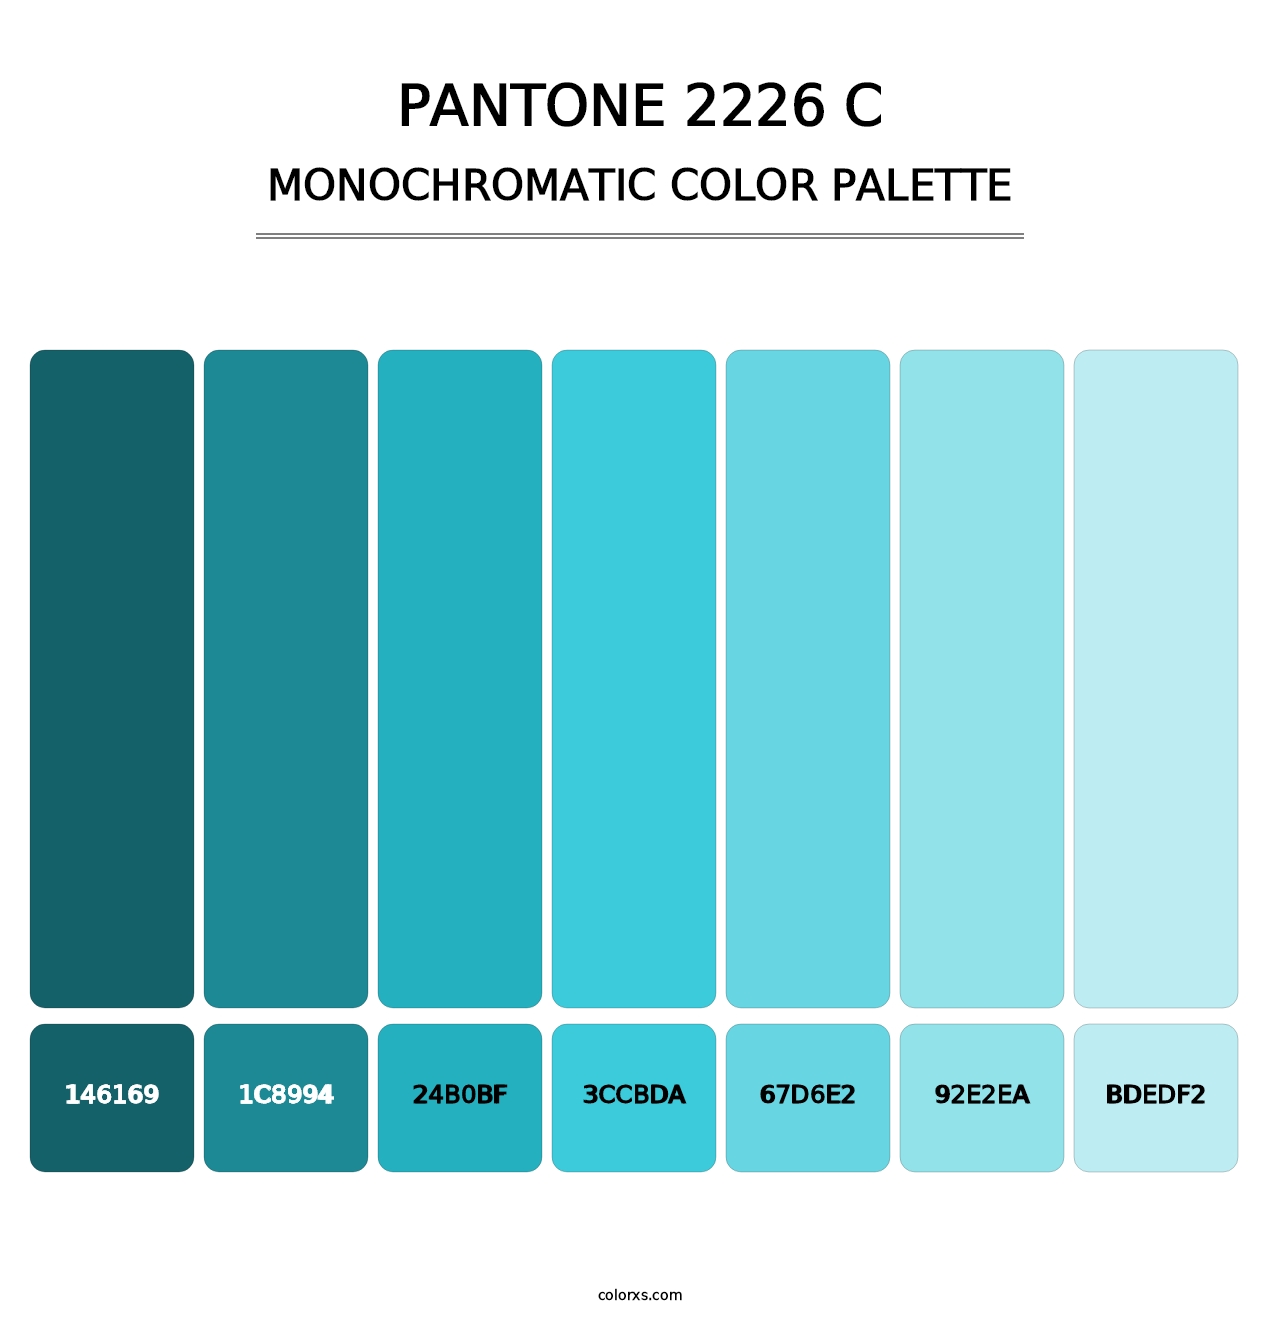 PANTONE 2226 C - Monochromatic Color Palette